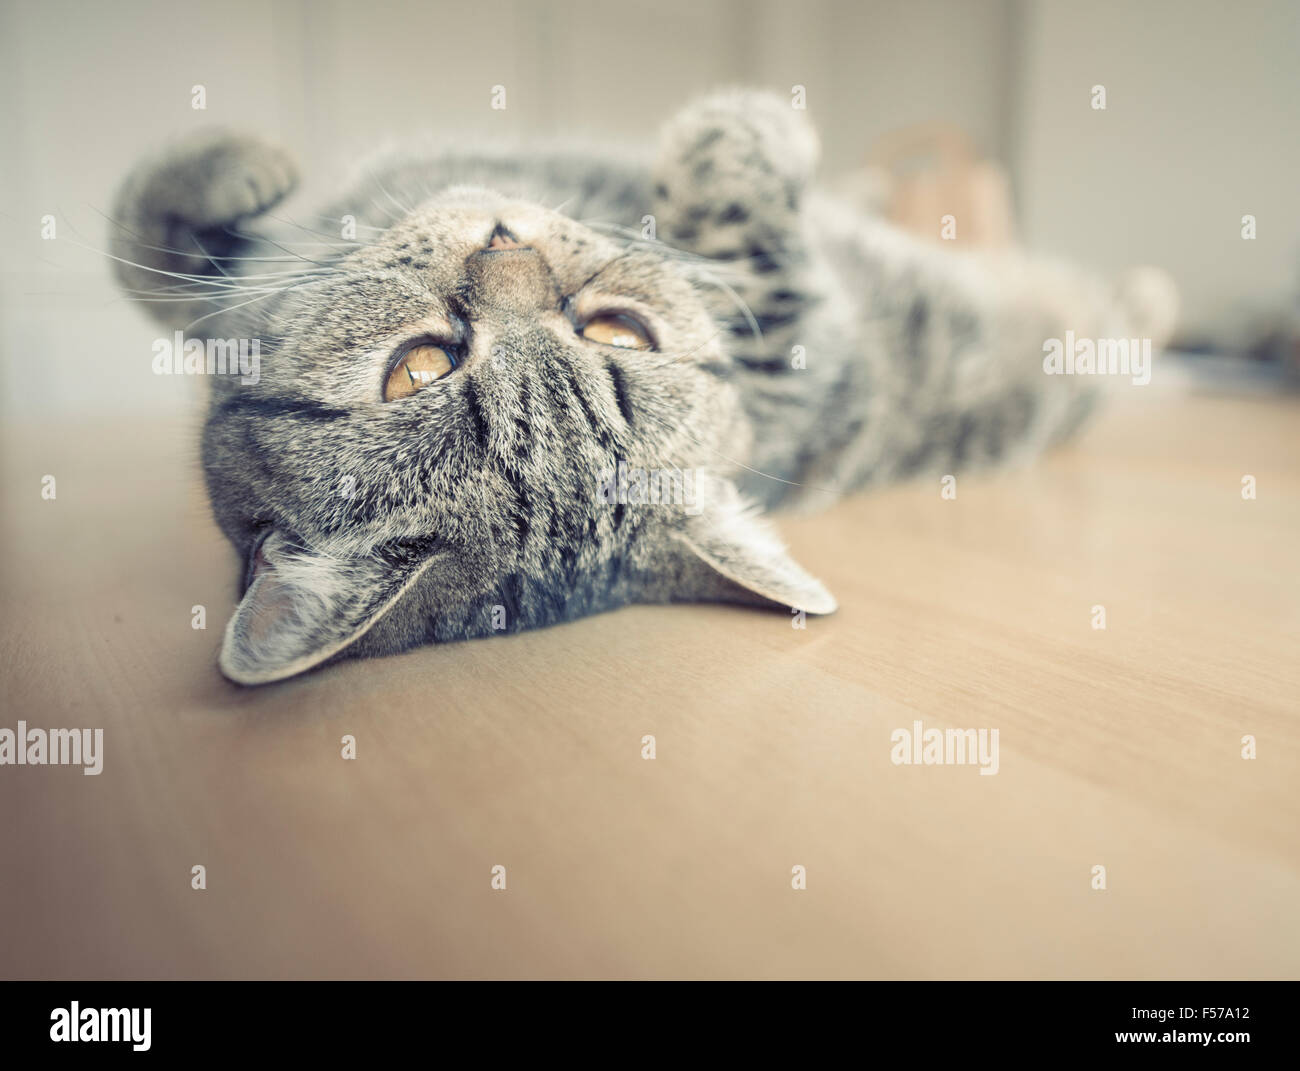 British shorthair cat allongé sur le dos sur une table de cuisine en haut. Banque D'Images